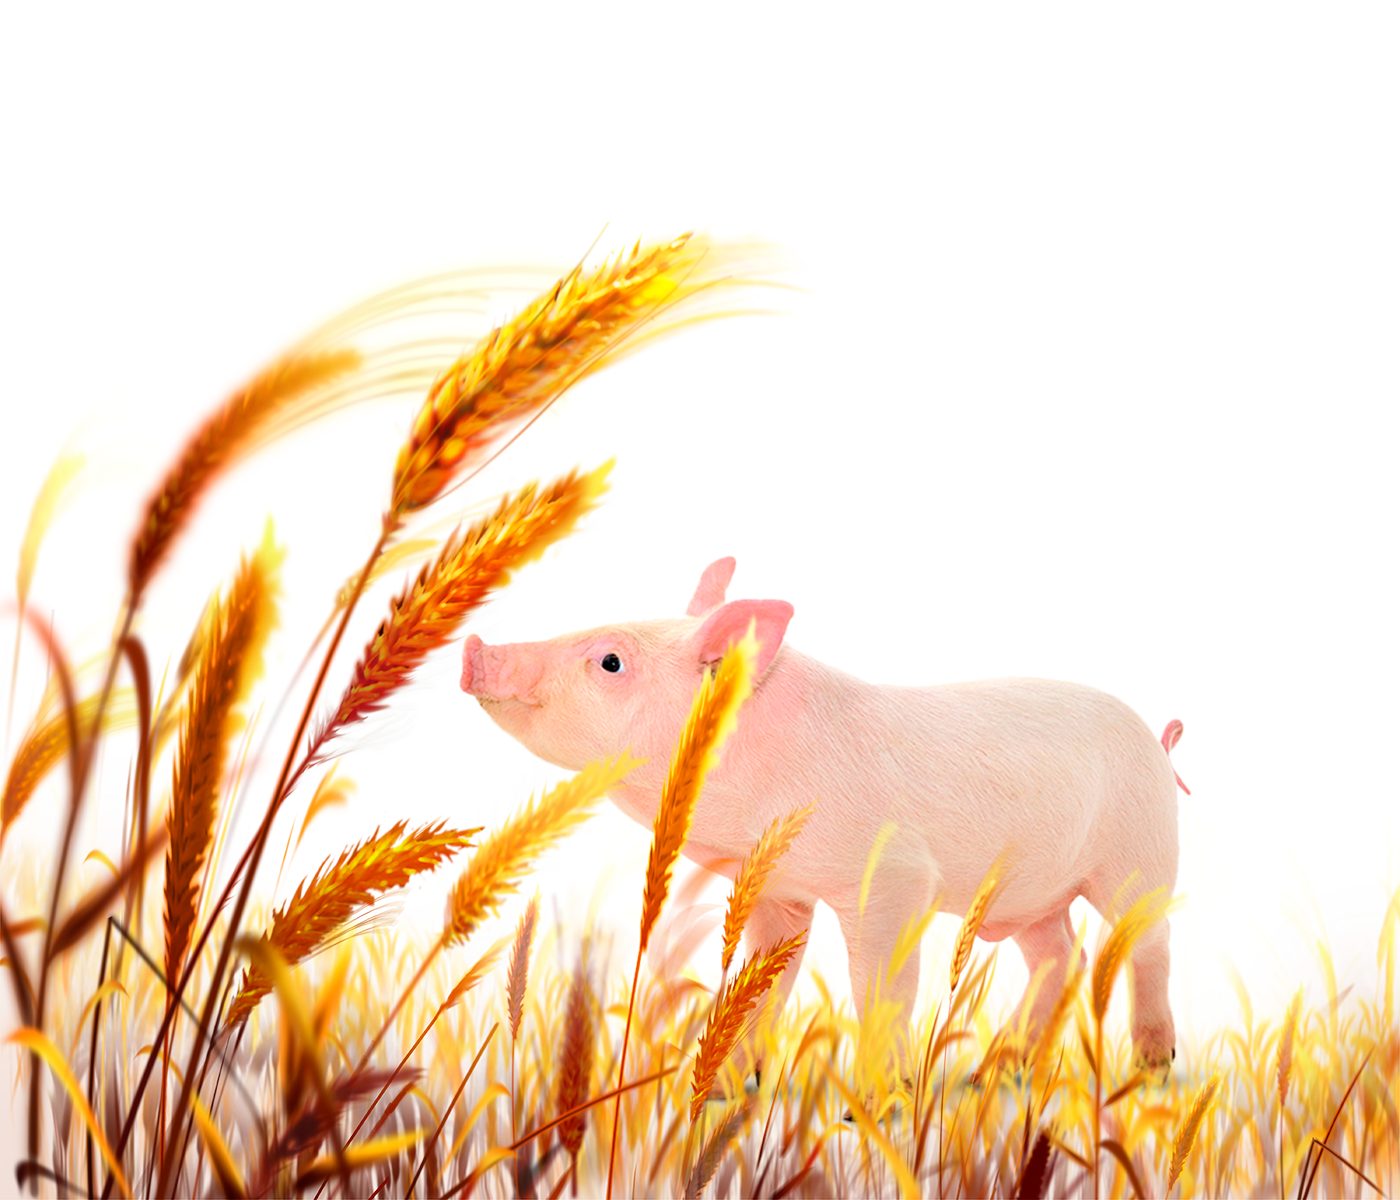 Fibra dietética y su efecto en el rendimiento y bienestar del cerdo – Parte I